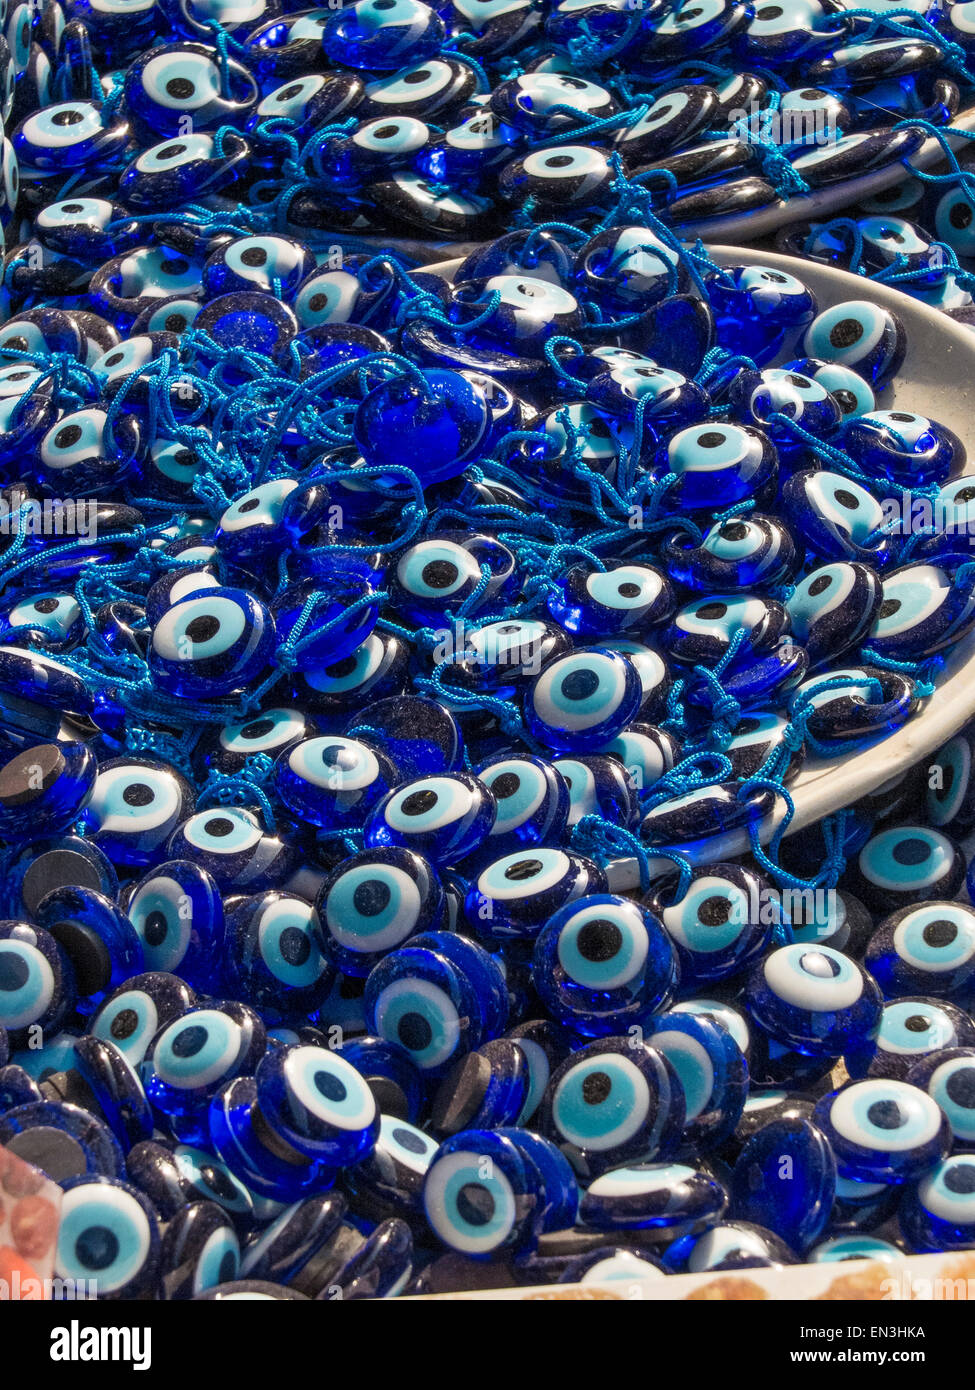 Nazar - türkisches Auge-förmigen Amulett zum Schutz gegen den bösen Blick  geglaubt Stockfotografie - Alamy